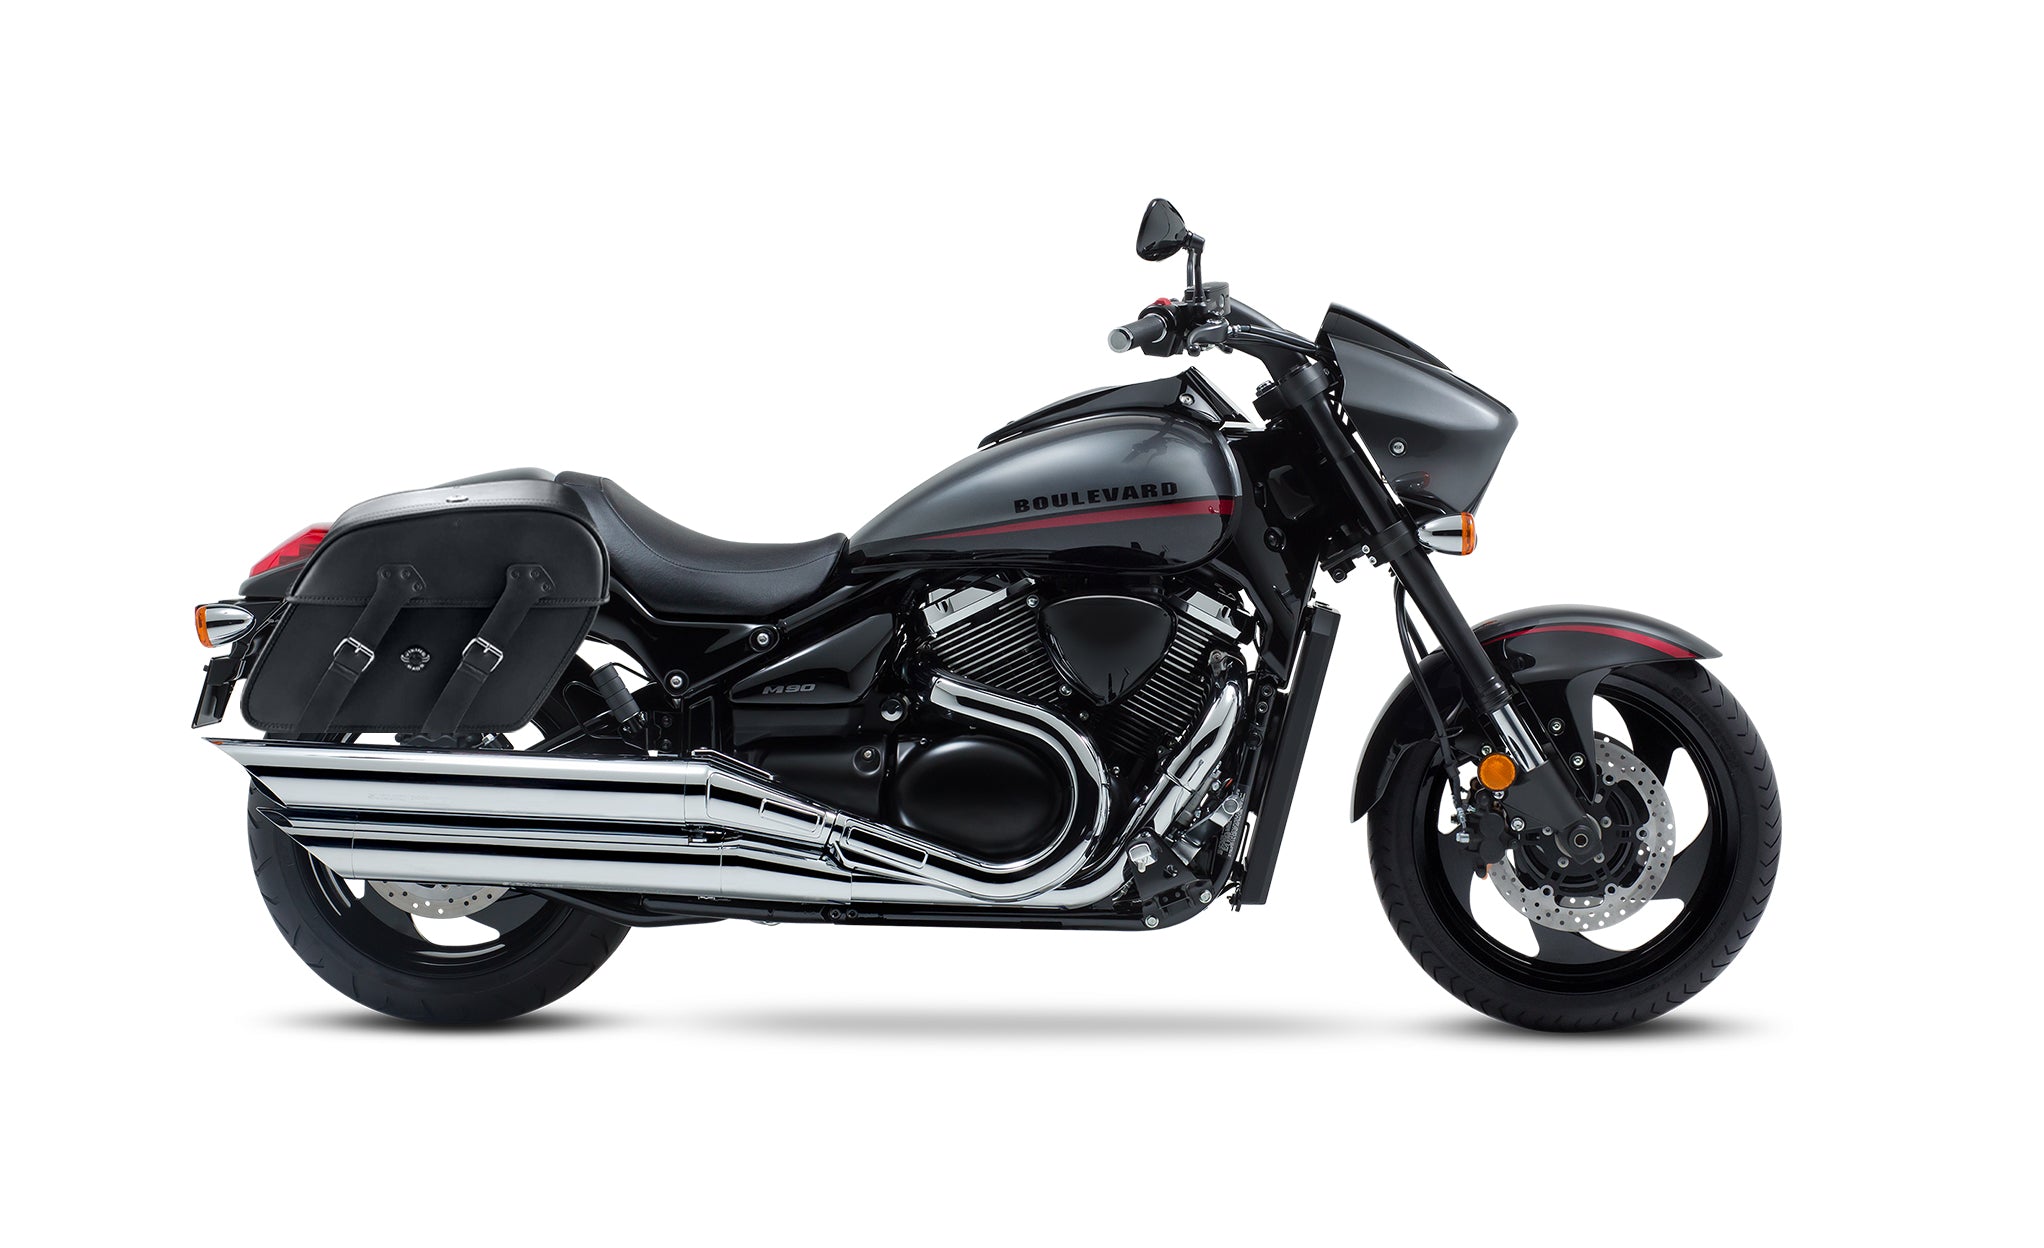 Viking Raven Large Suzuki Boulevard M90 Vz1500 Motorcycle Leather Saddlebags on Bike Photo @expand